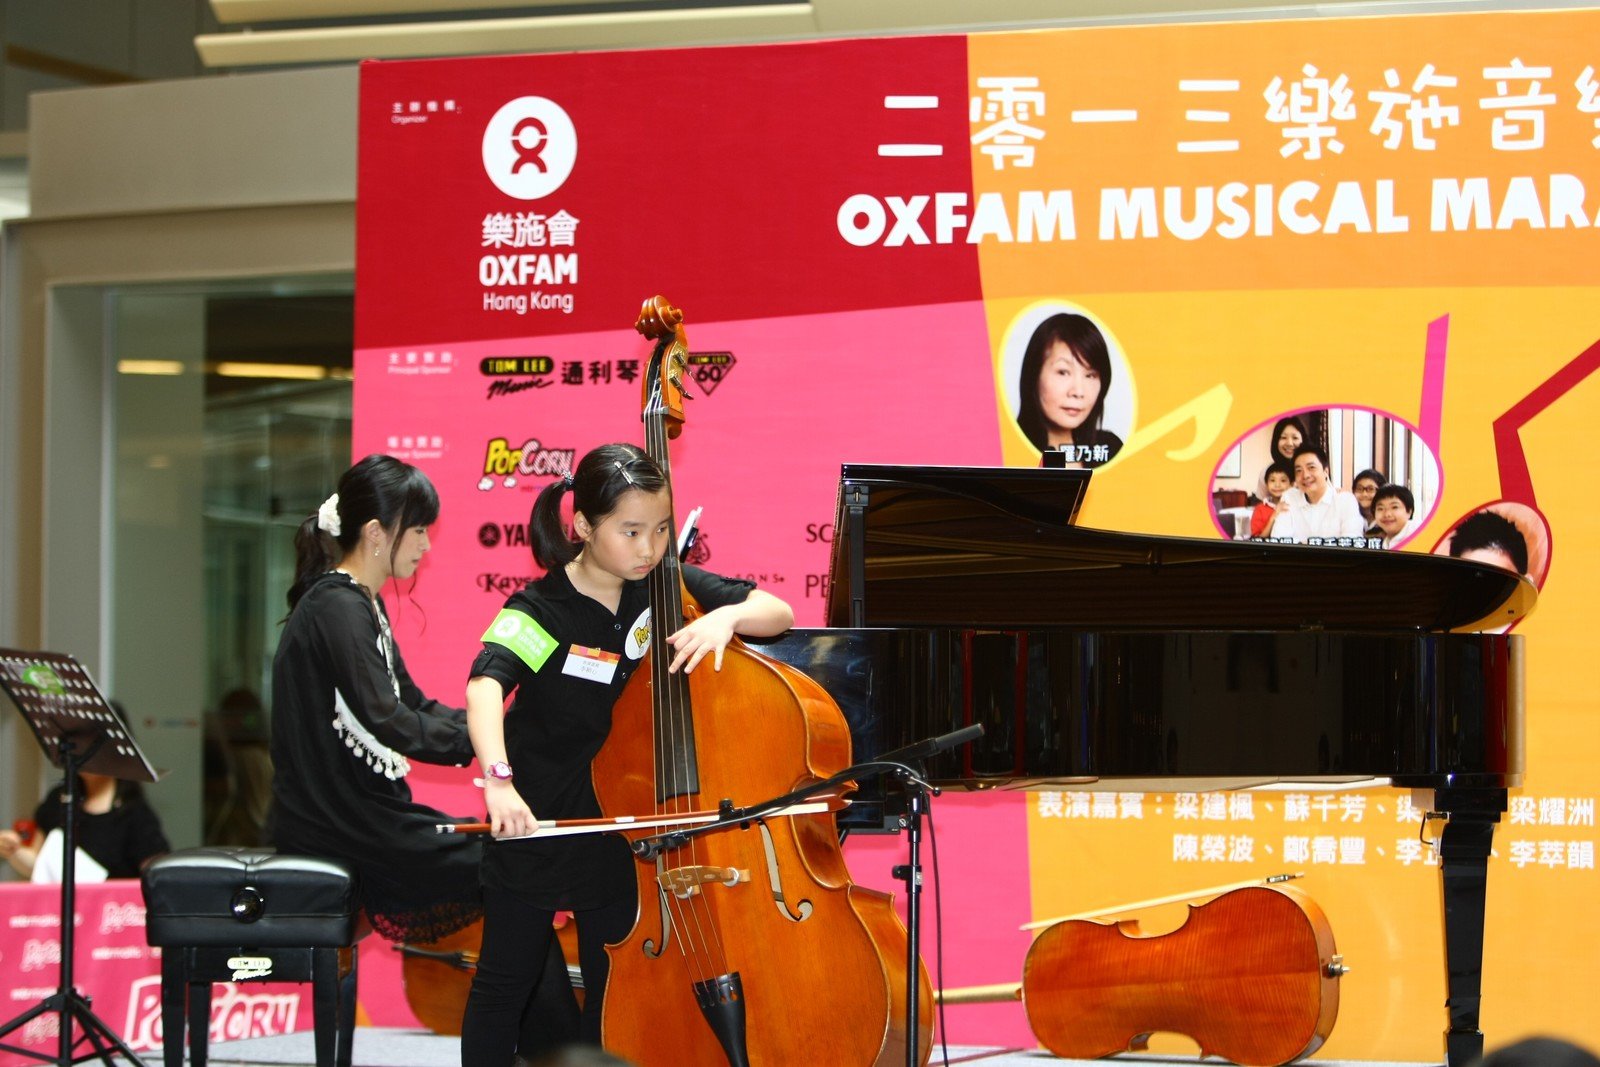 小小低音大提琴手李穎心於2013「樂施音樂馬拉松」開幕禮上演奏兩首樂曲。